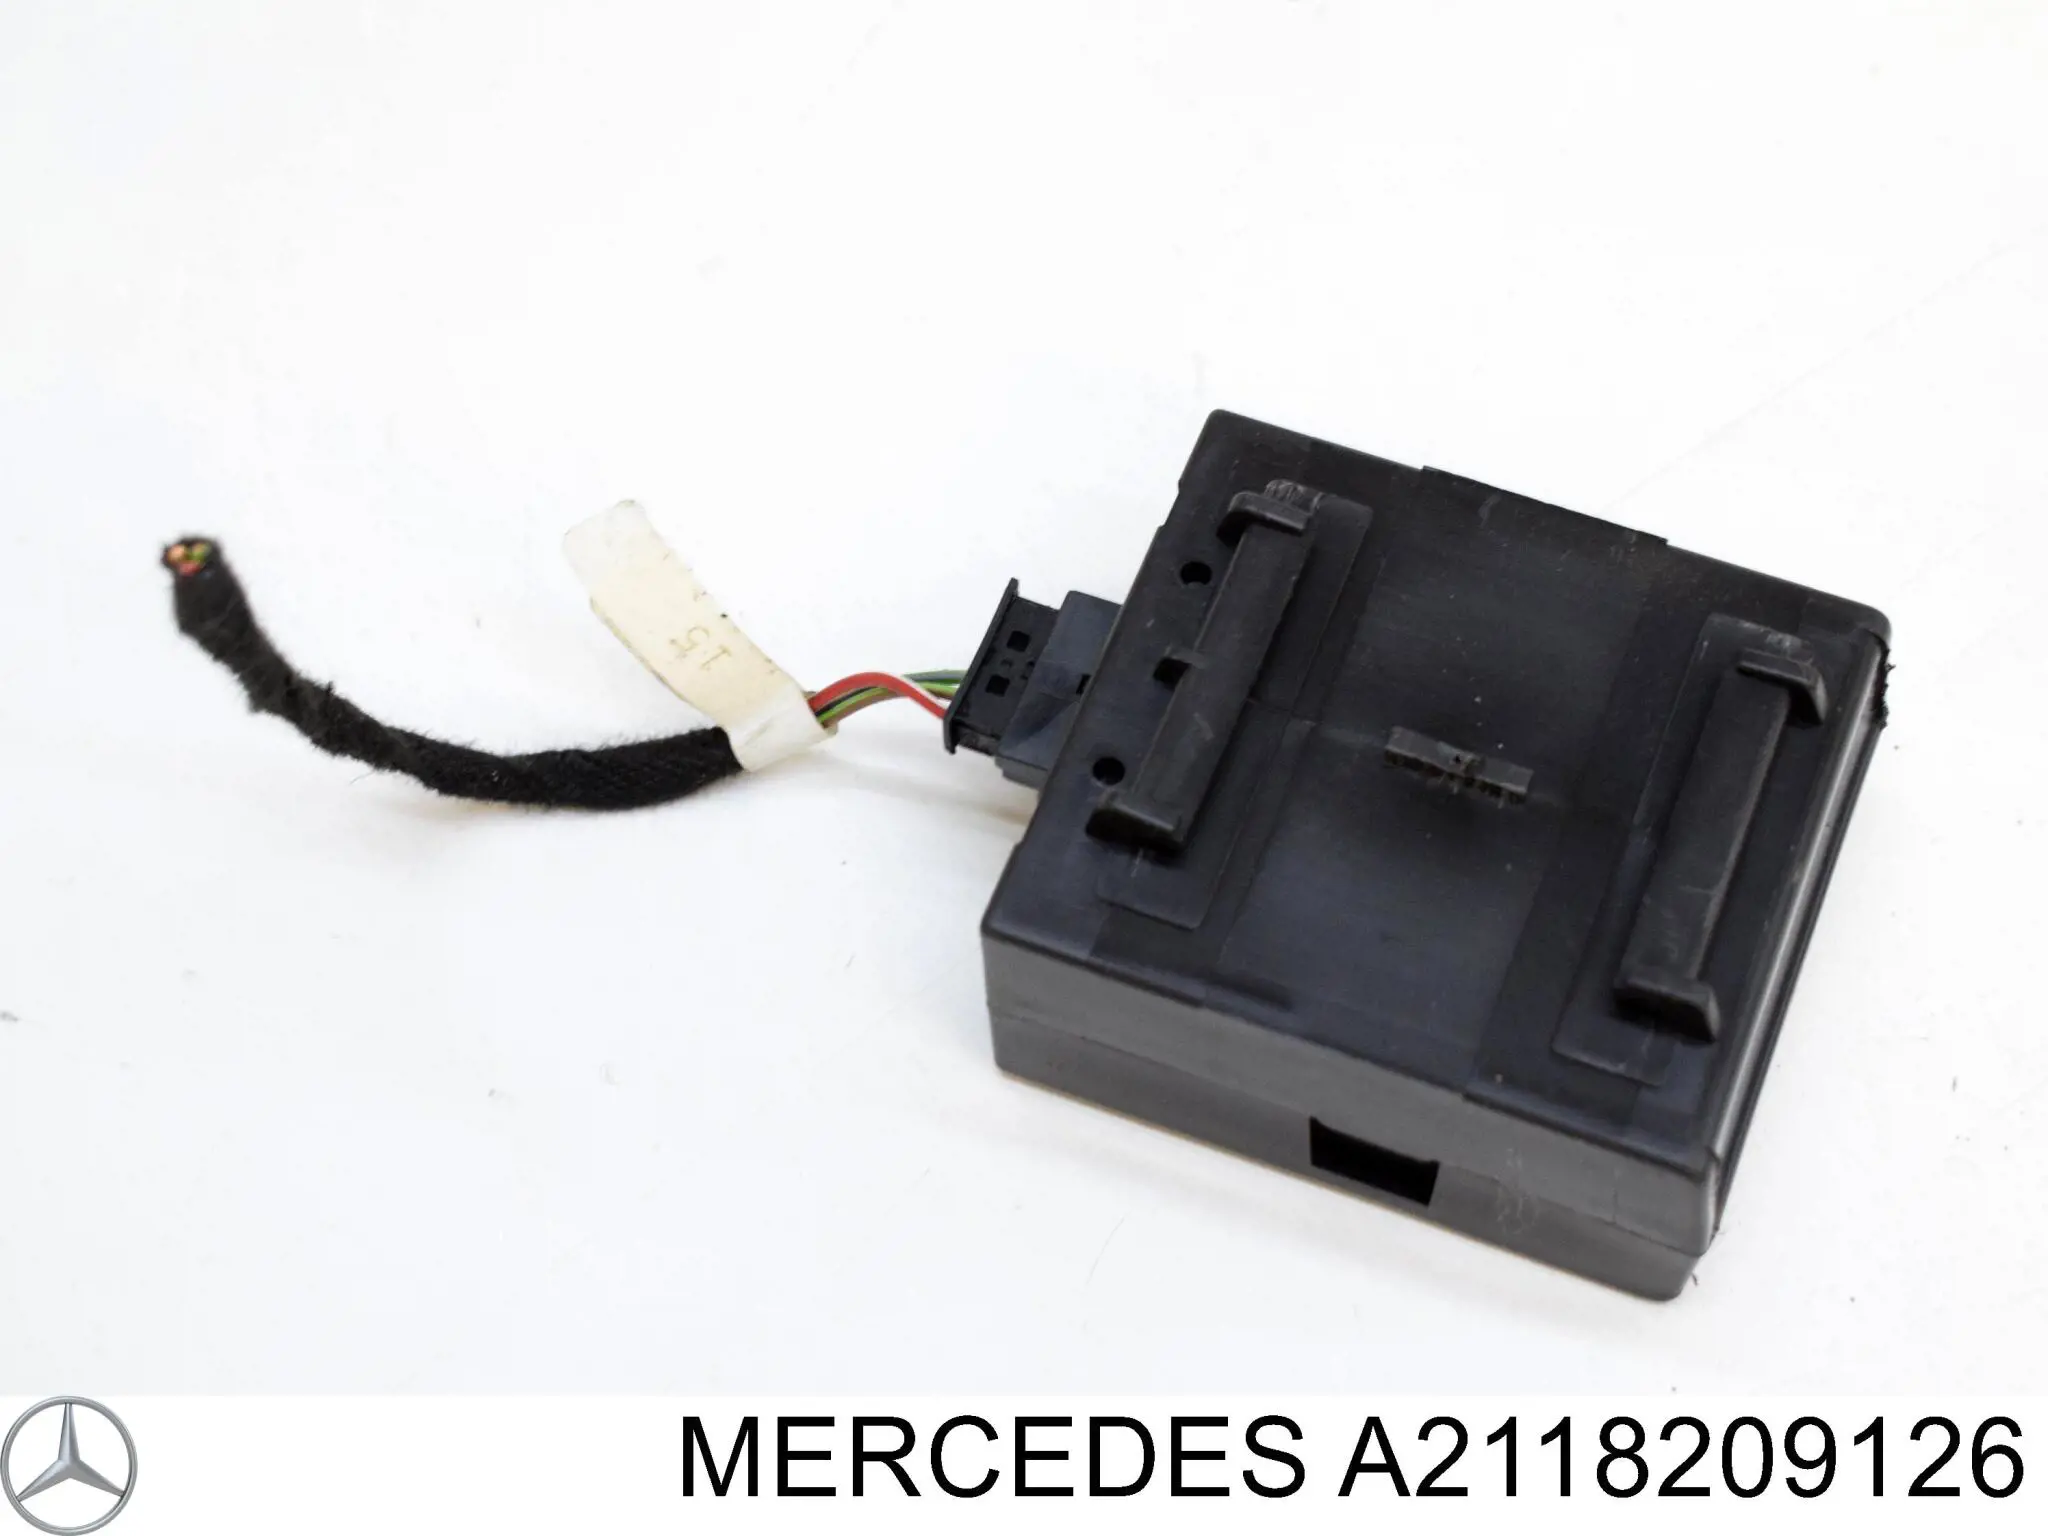 Брелок управления сигнализацией Mercedes A2118209126